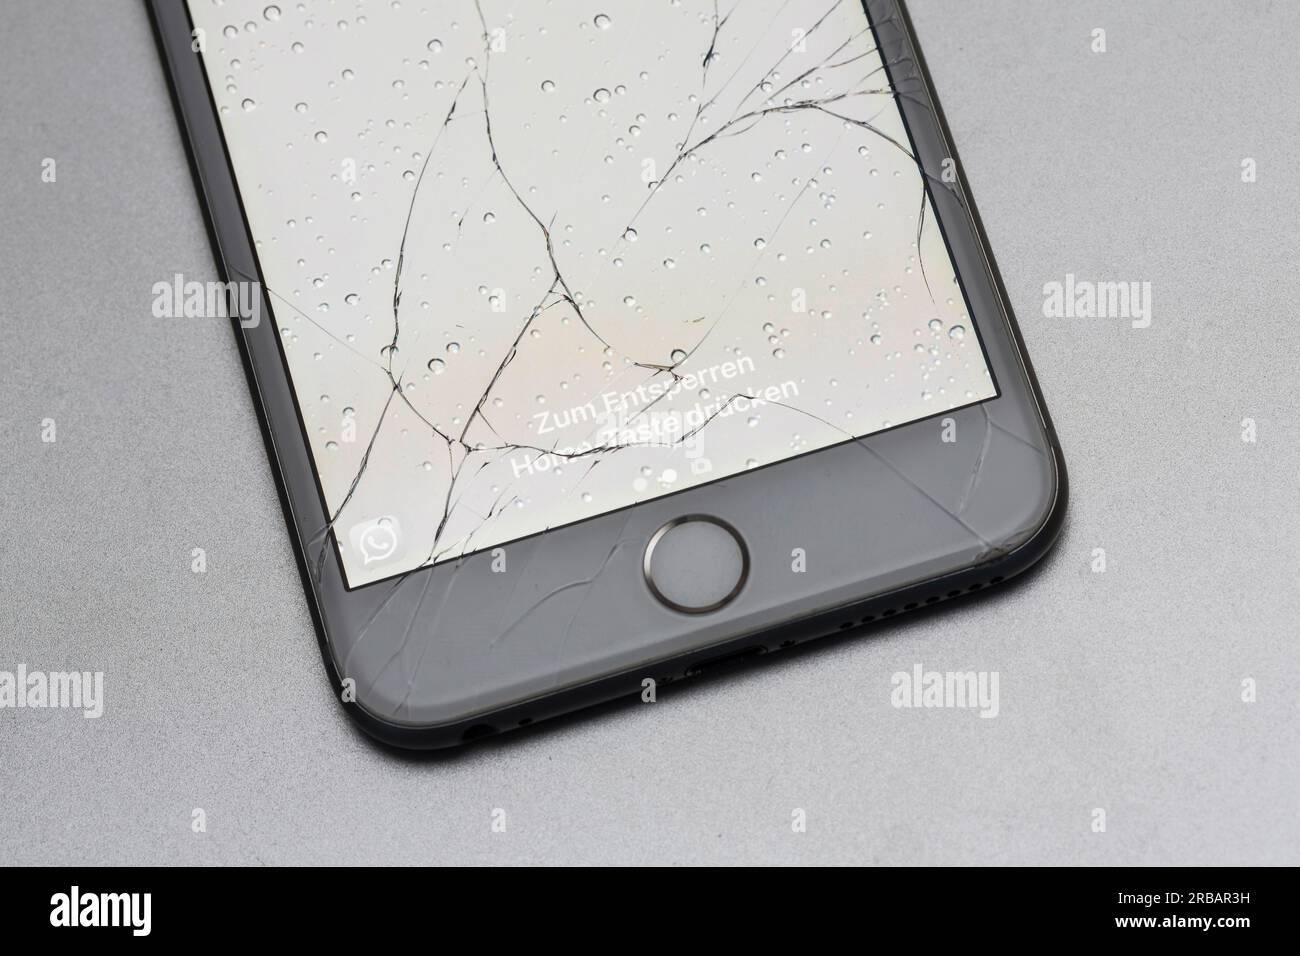 Broken iphone immagini e fotografie stock ad alta risoluzione - Alamy